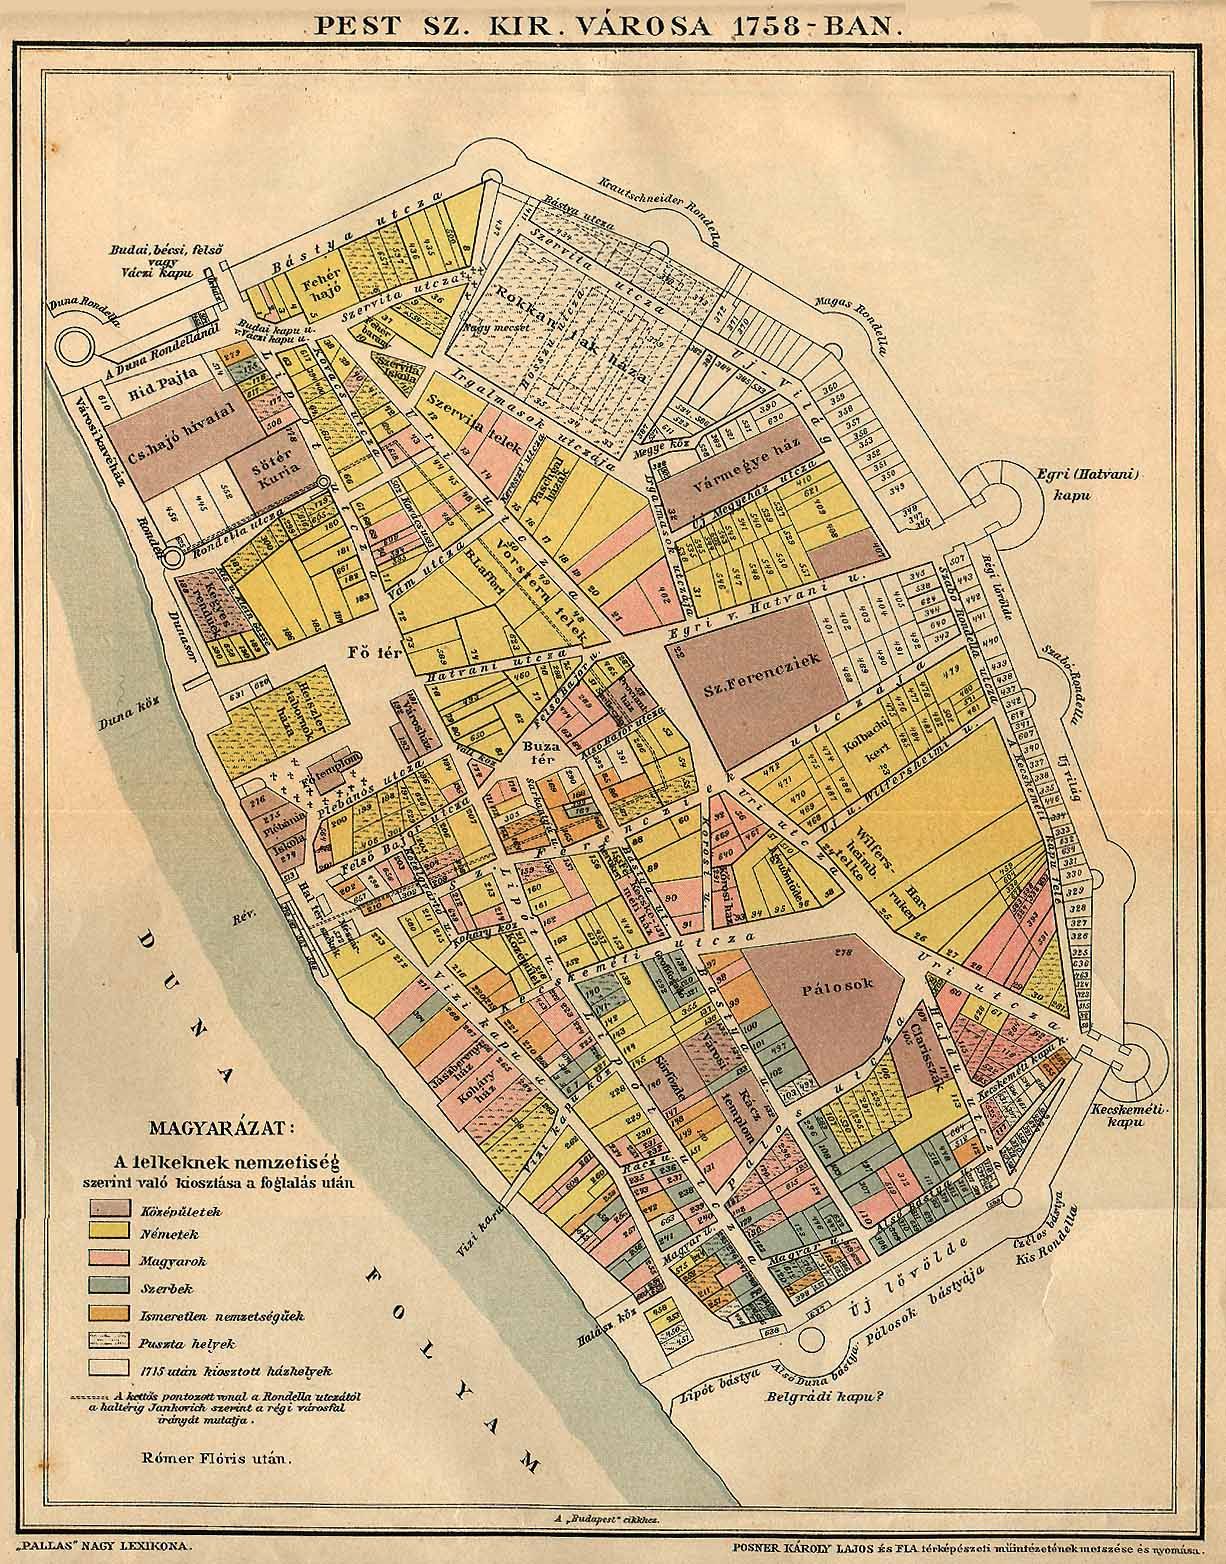 budapest térkép angyalföld Pest 1758 as térképe. Na melyik utca neve nem változott azóta  budapest térkép angyalföld